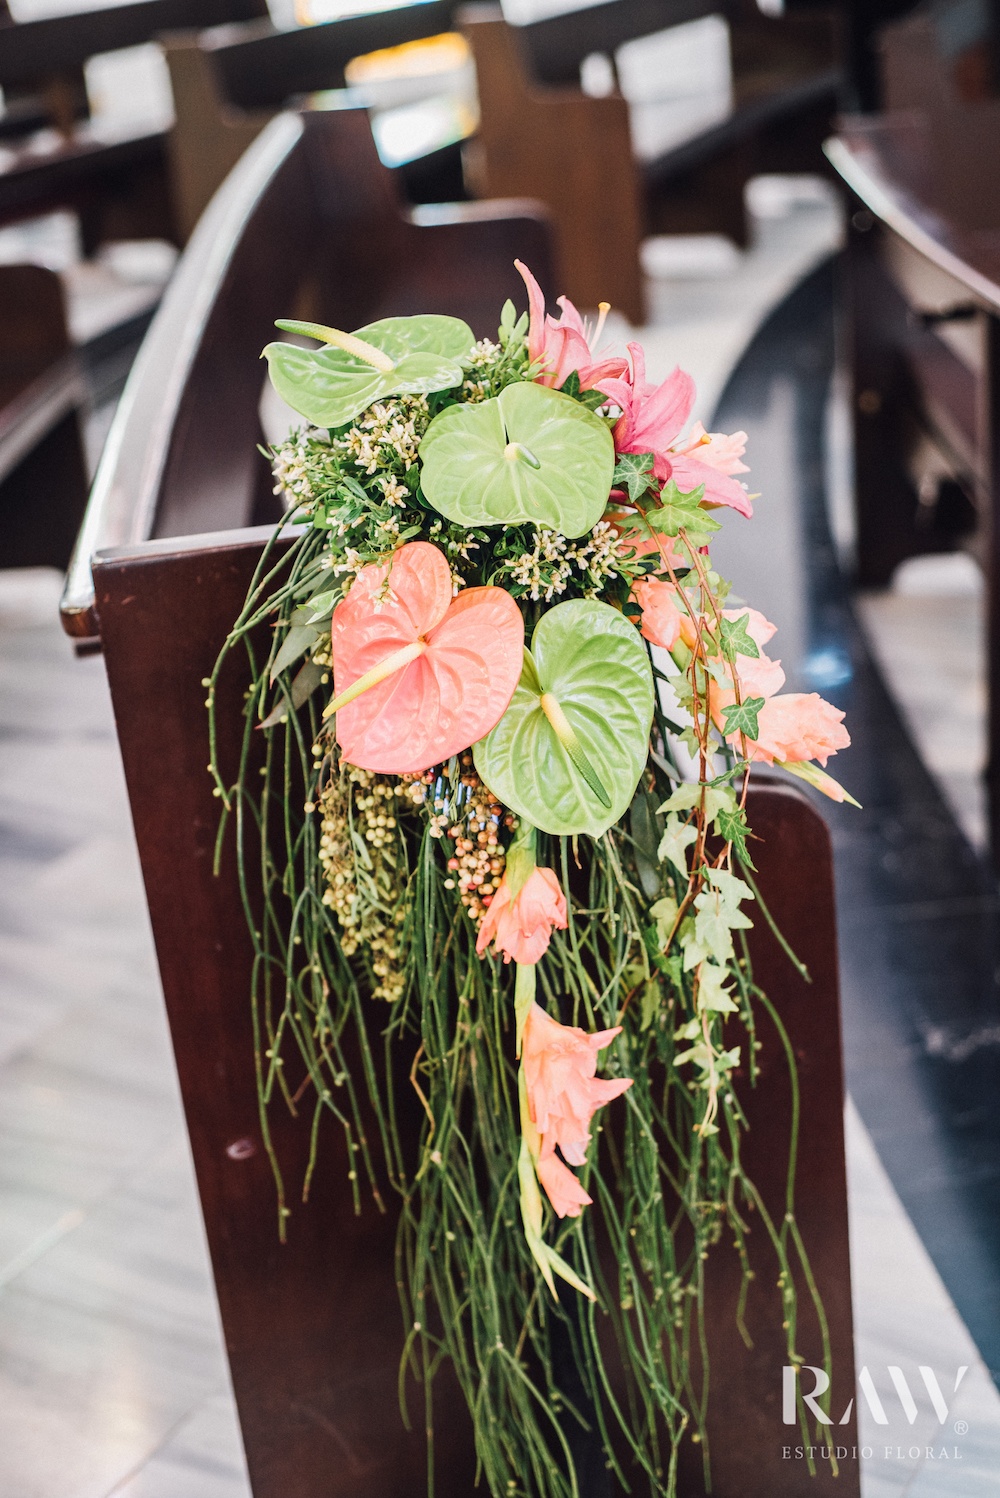 Bruiloft bloemen decoratie op stoel